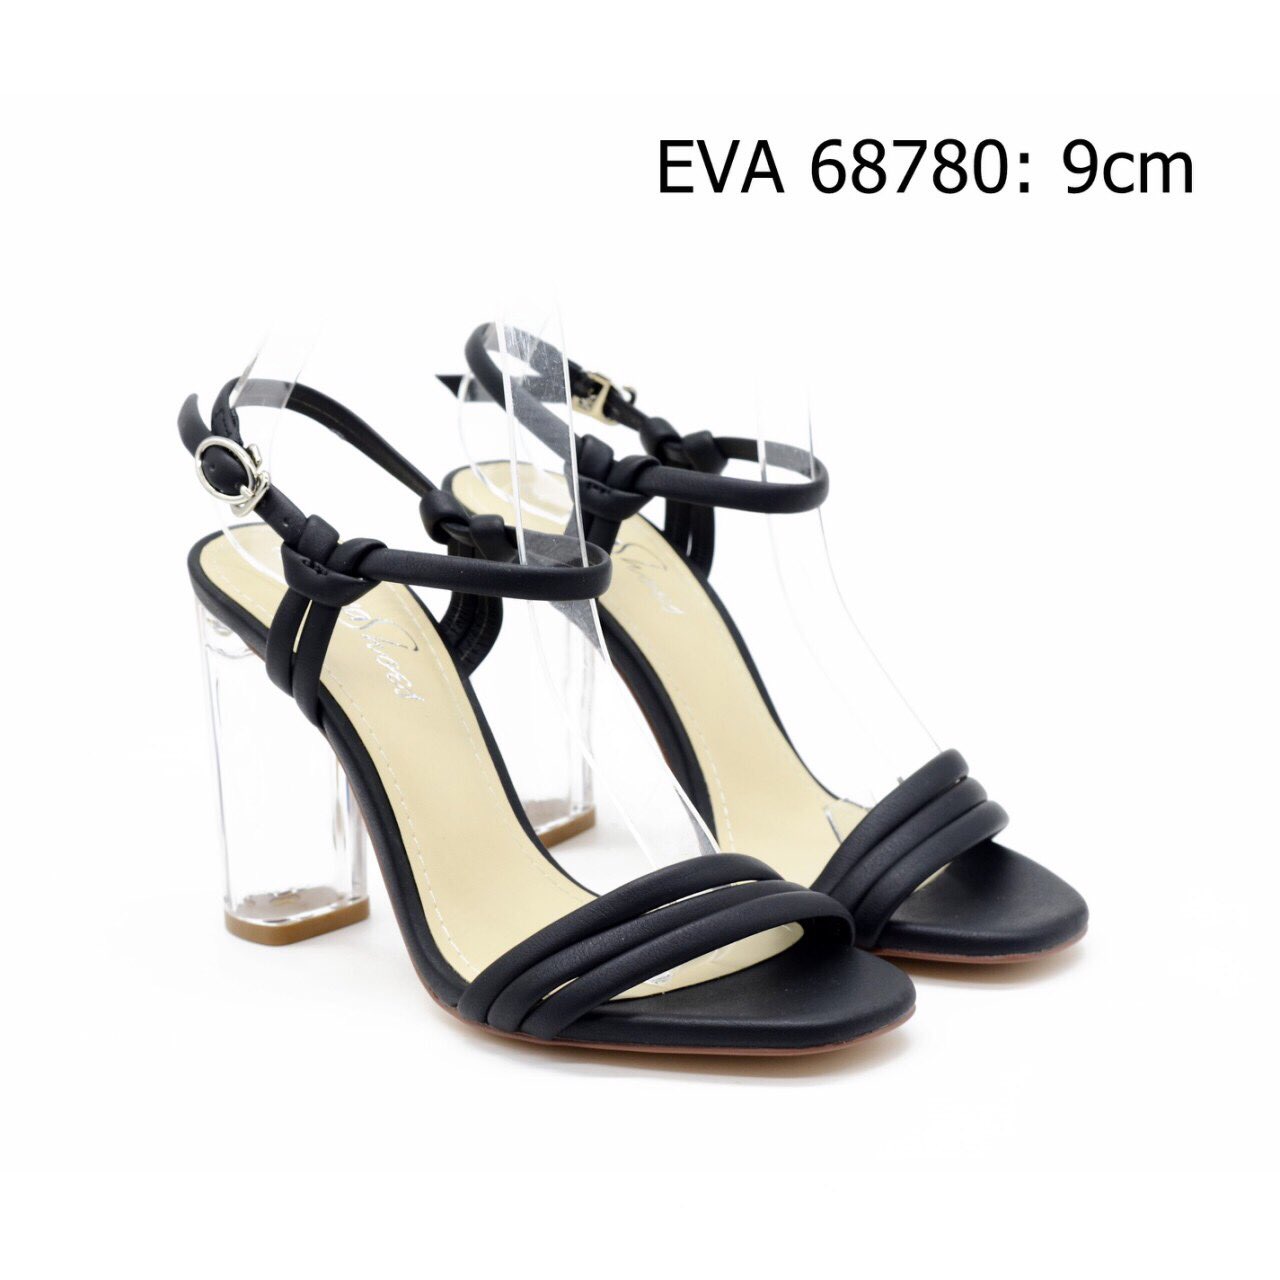 Sandal cao gót EVA 68780 thiết kế gót trong suốt thời thượng mới.